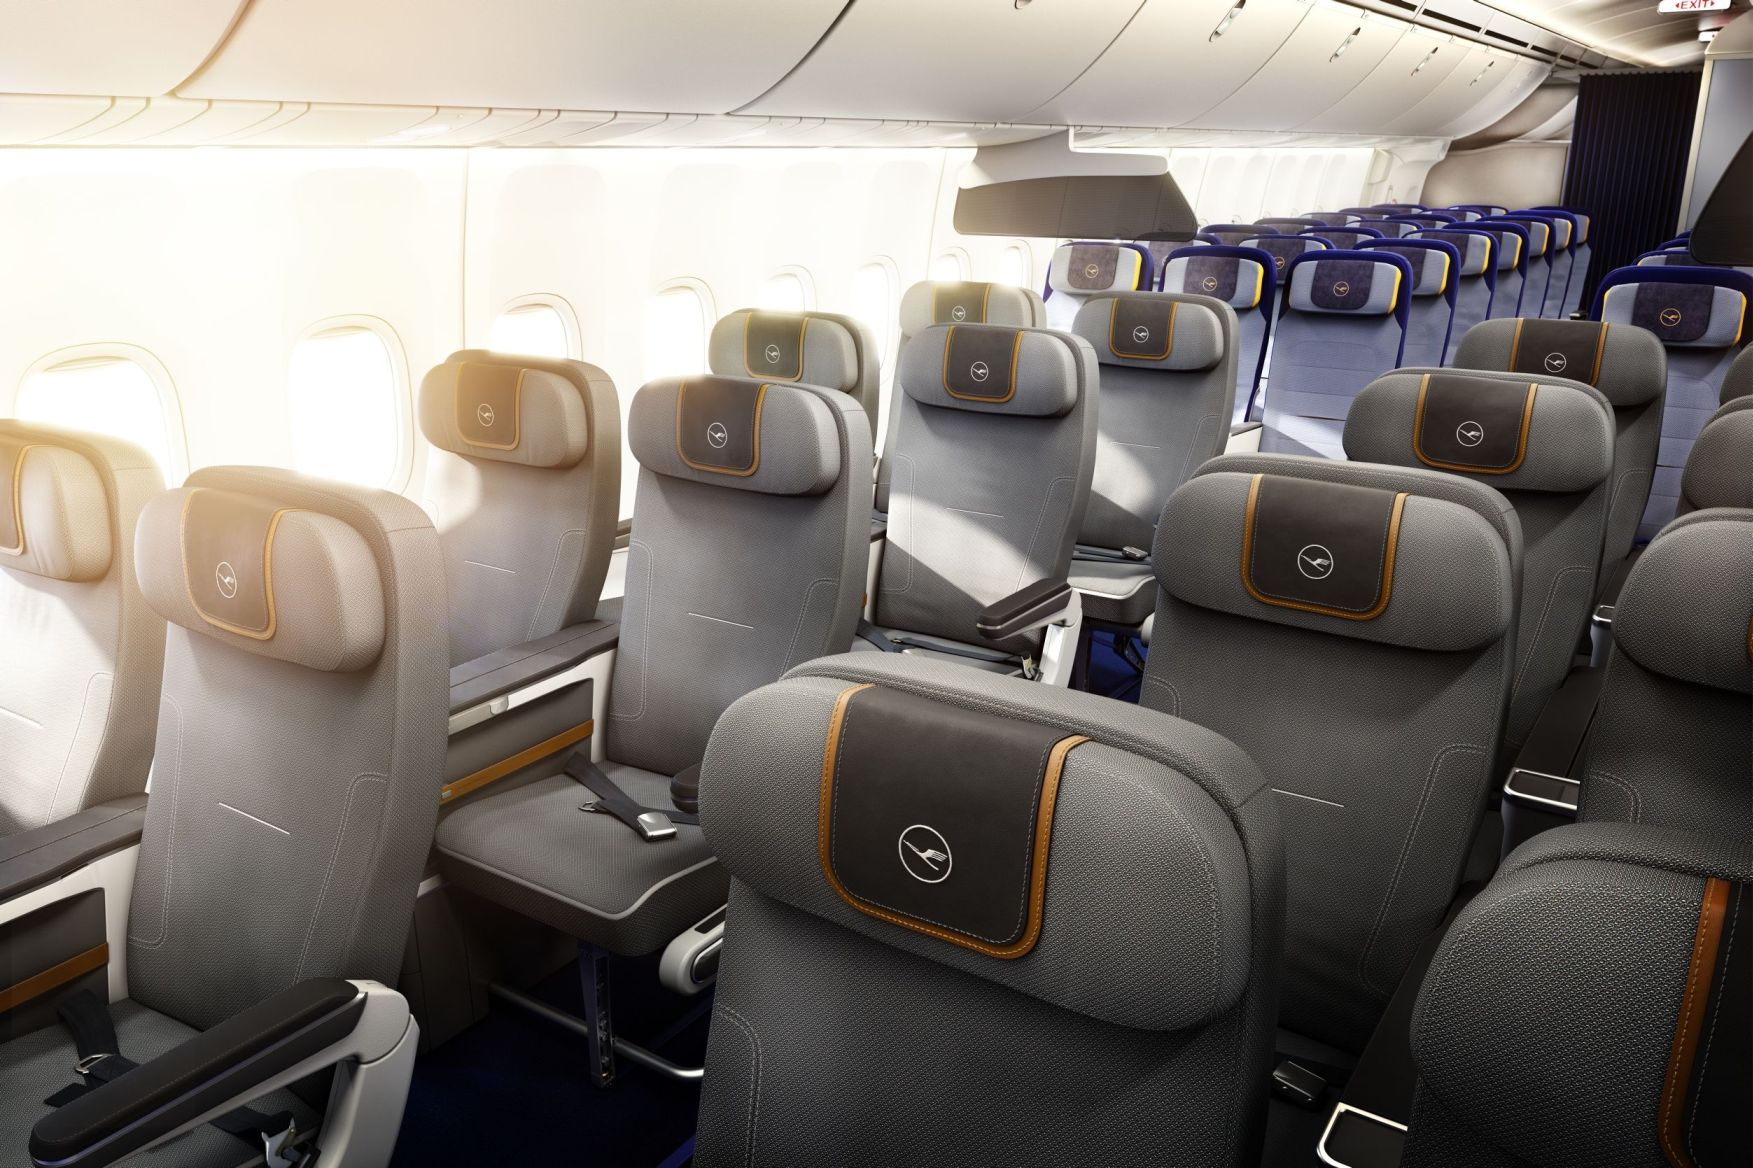 A Lufthansa fotóján jól érzékelhető az elrendezés: előtérben a prémium turista osztály, hátrébb a hagyományos econnomy class üléssorai